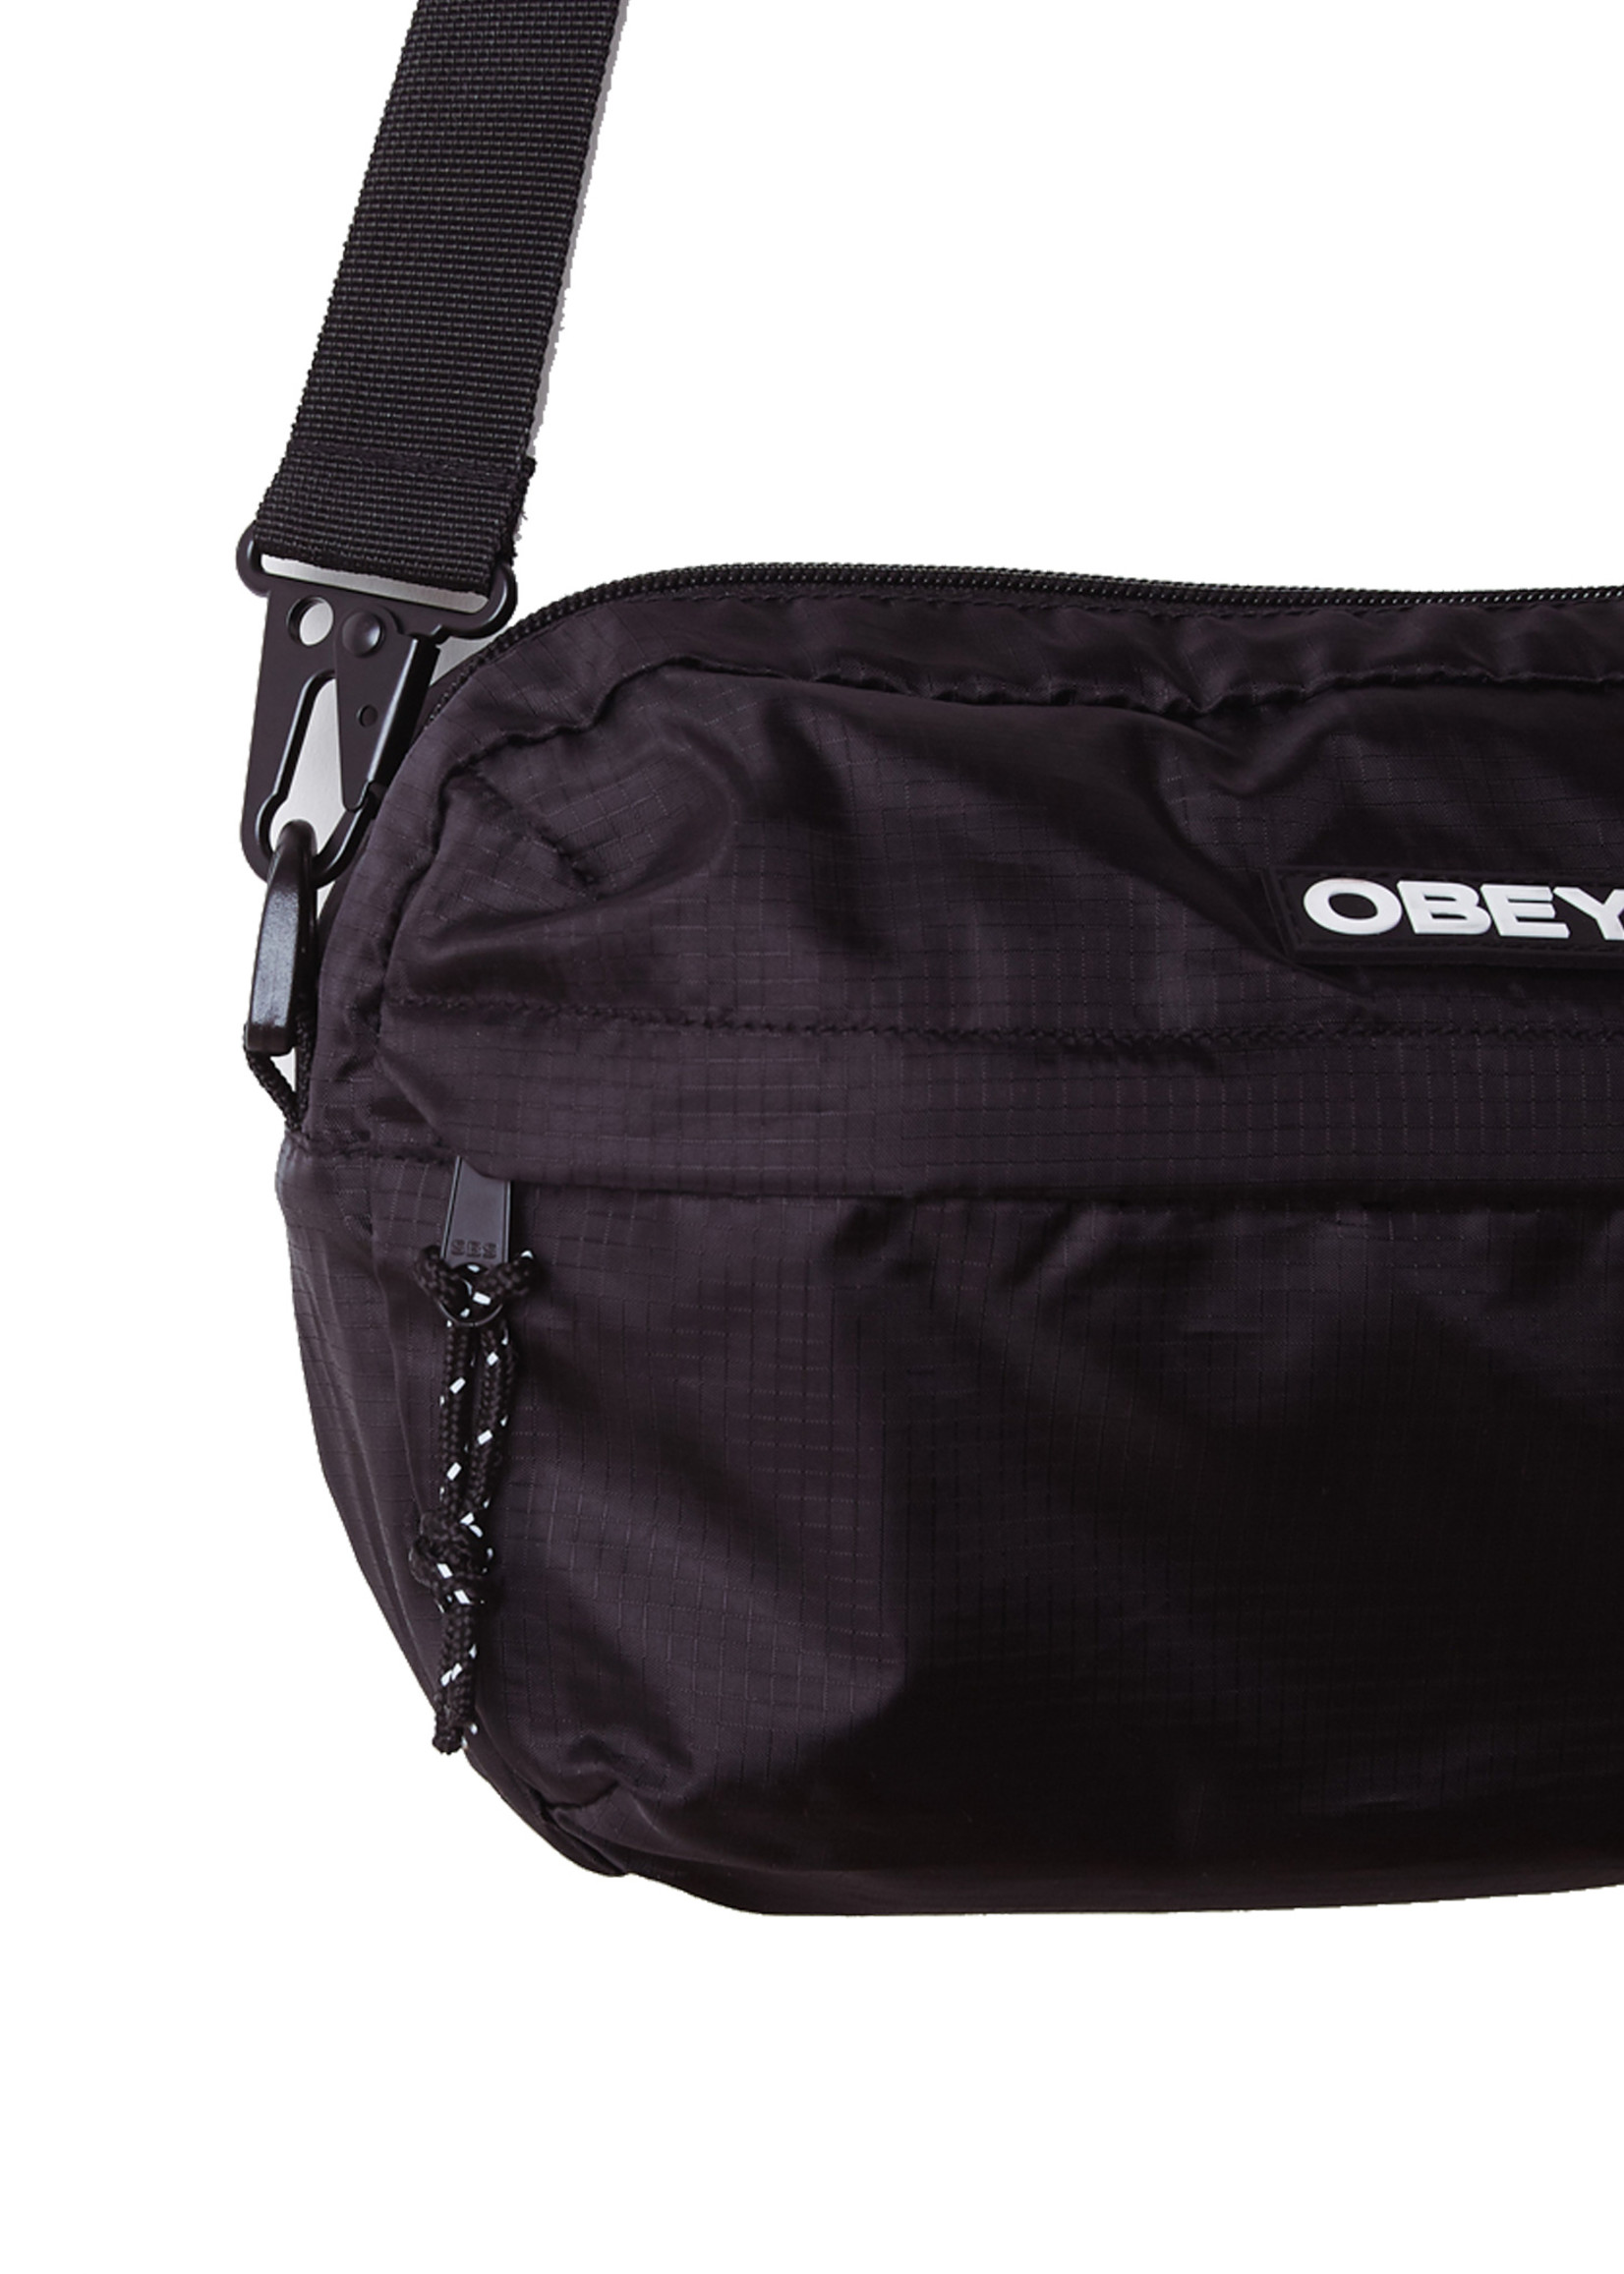 OBEY OBEY / Commuter Traveler Bag